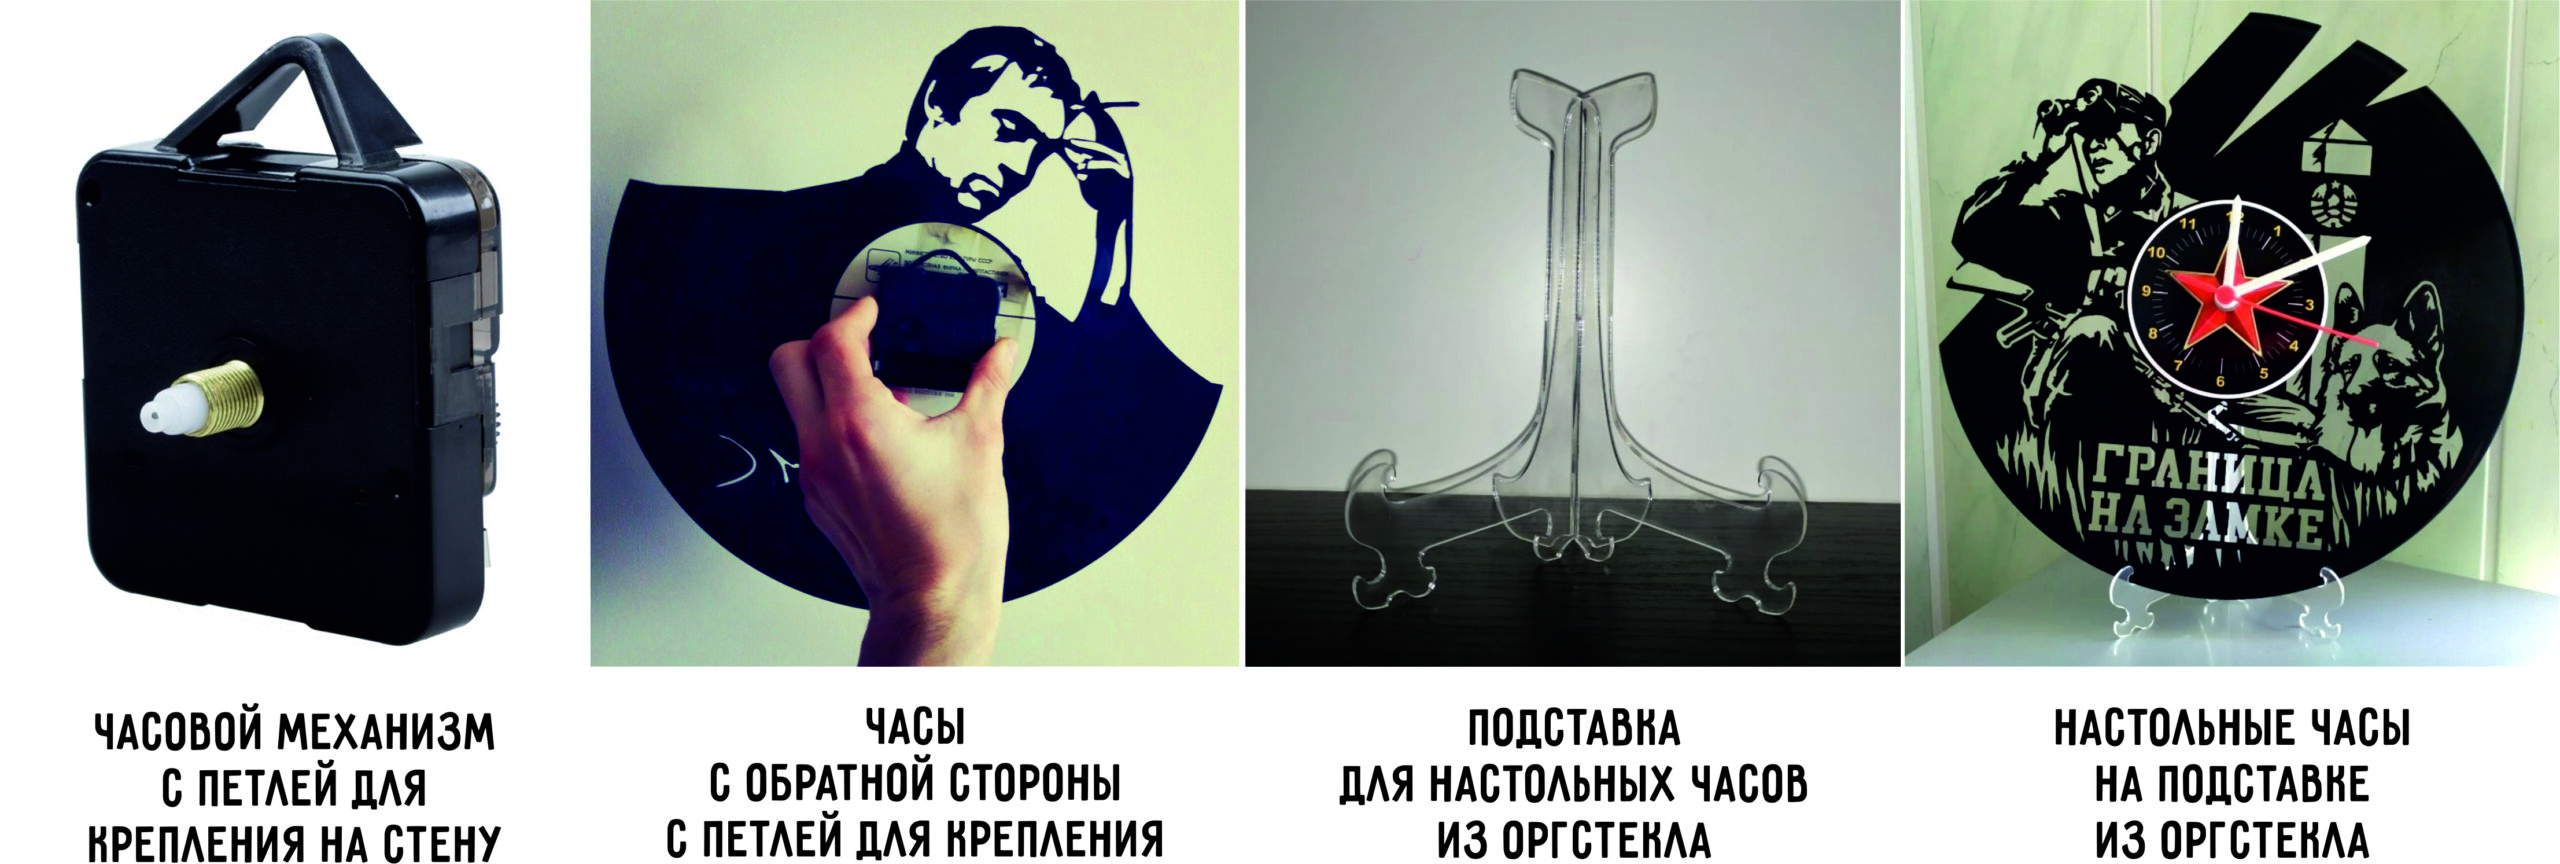 Янка Дягилева [Версия 1]. Дизайнерские часы из настоящей виниловой пластинки